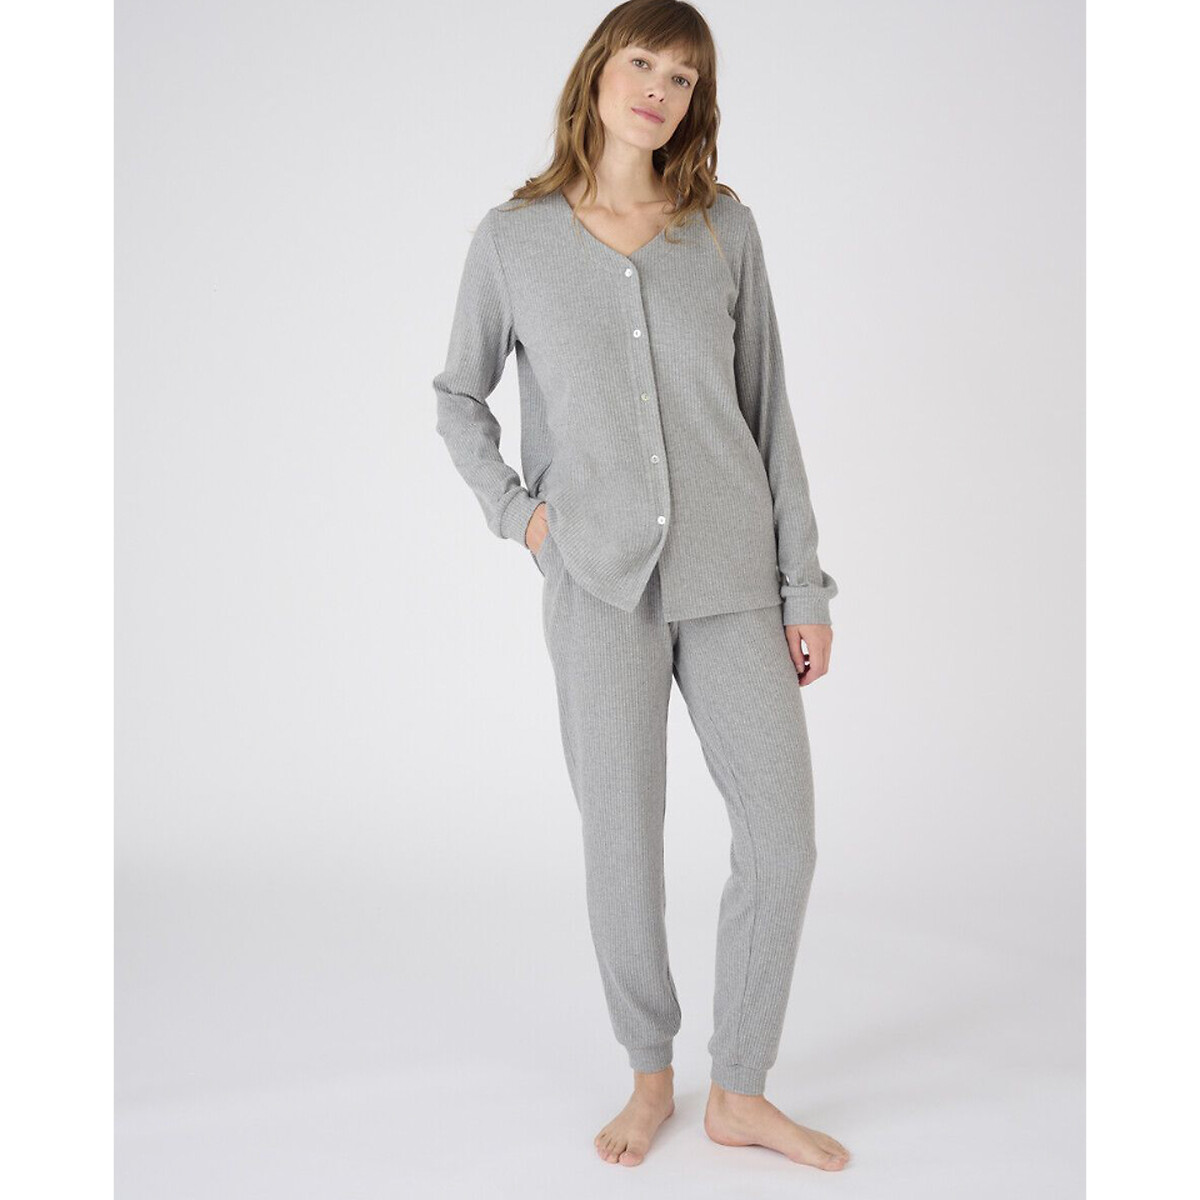 Комплект пижамный, Thermolactyl La Redoute L серый комплект пижамный из термолактила la redoute xs синий